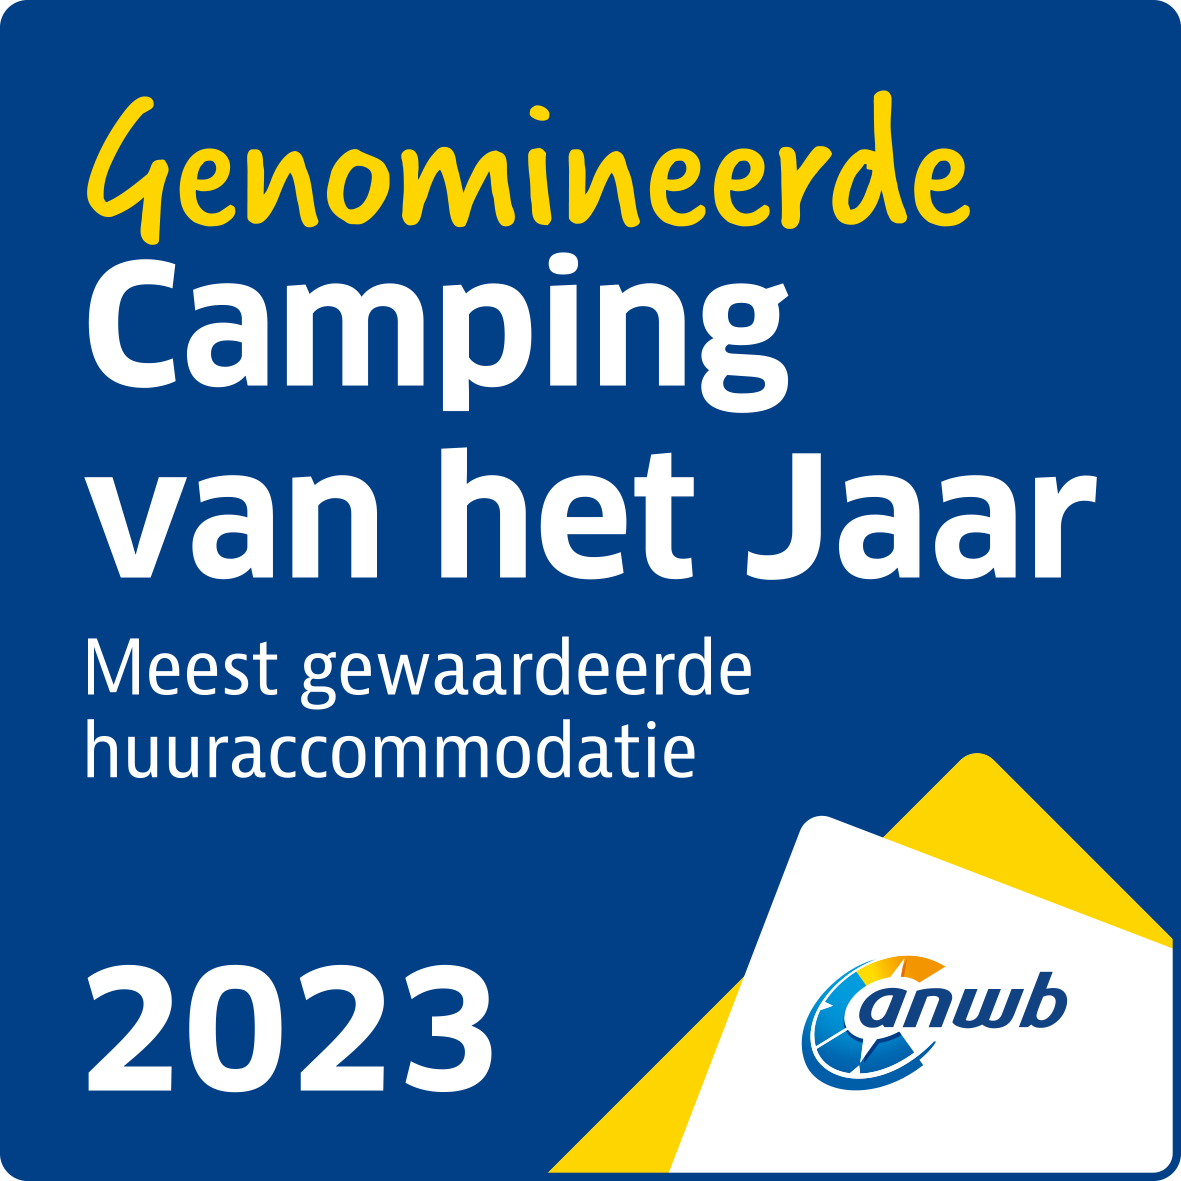 genomineerde_camping_van_het_jaar_2023_huur.png